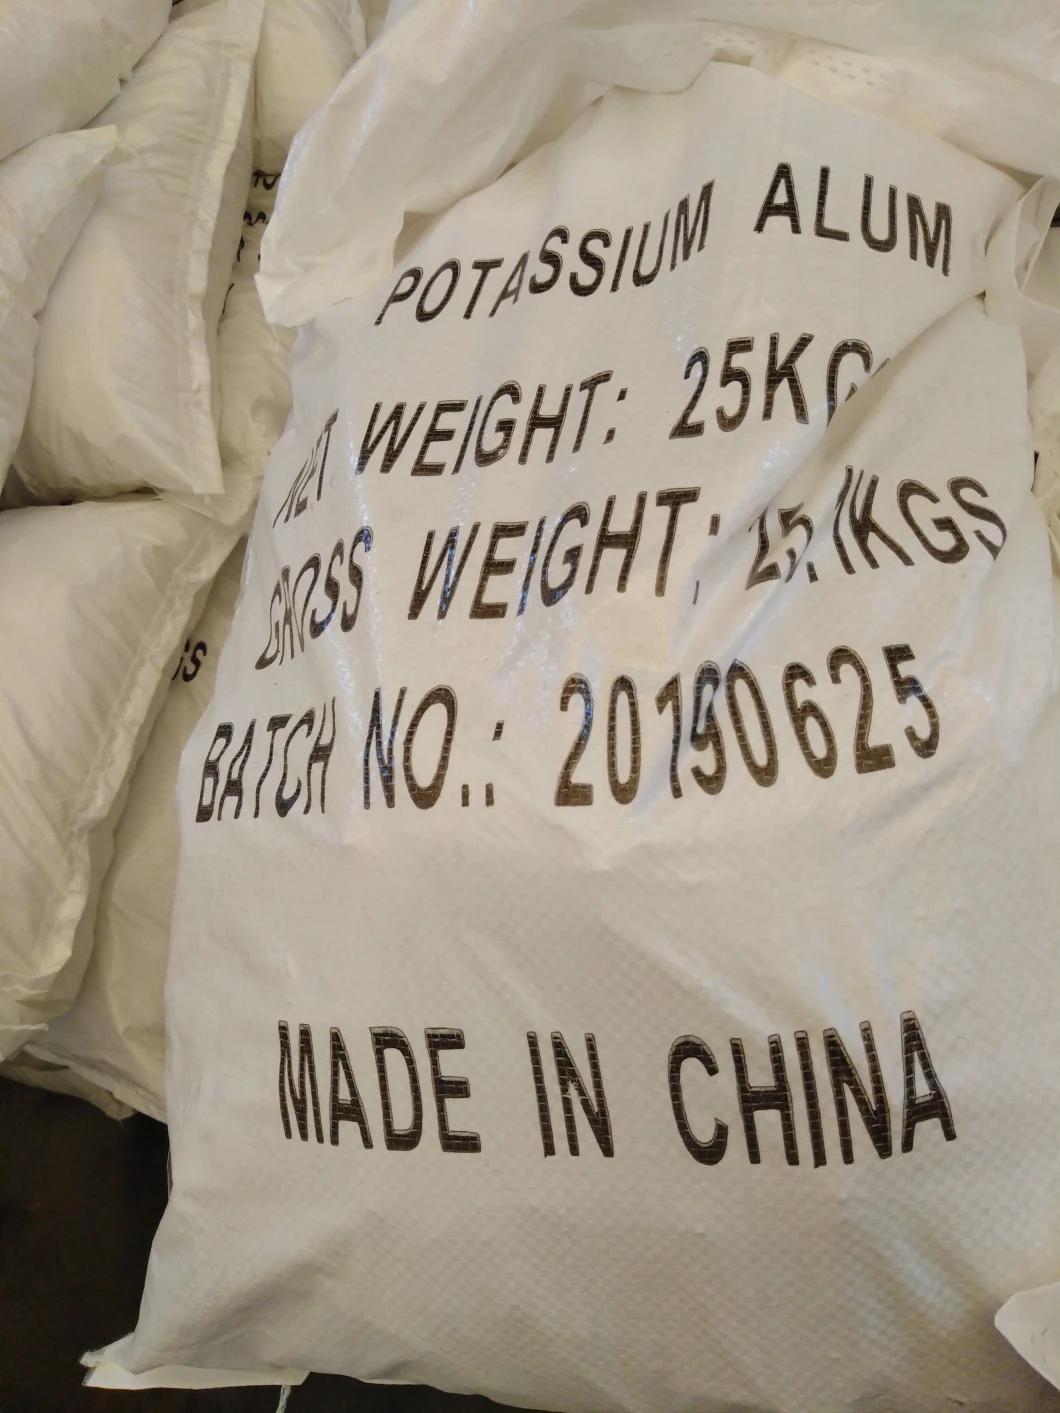 Lowest Price of Potassium Aluminium Sulphate